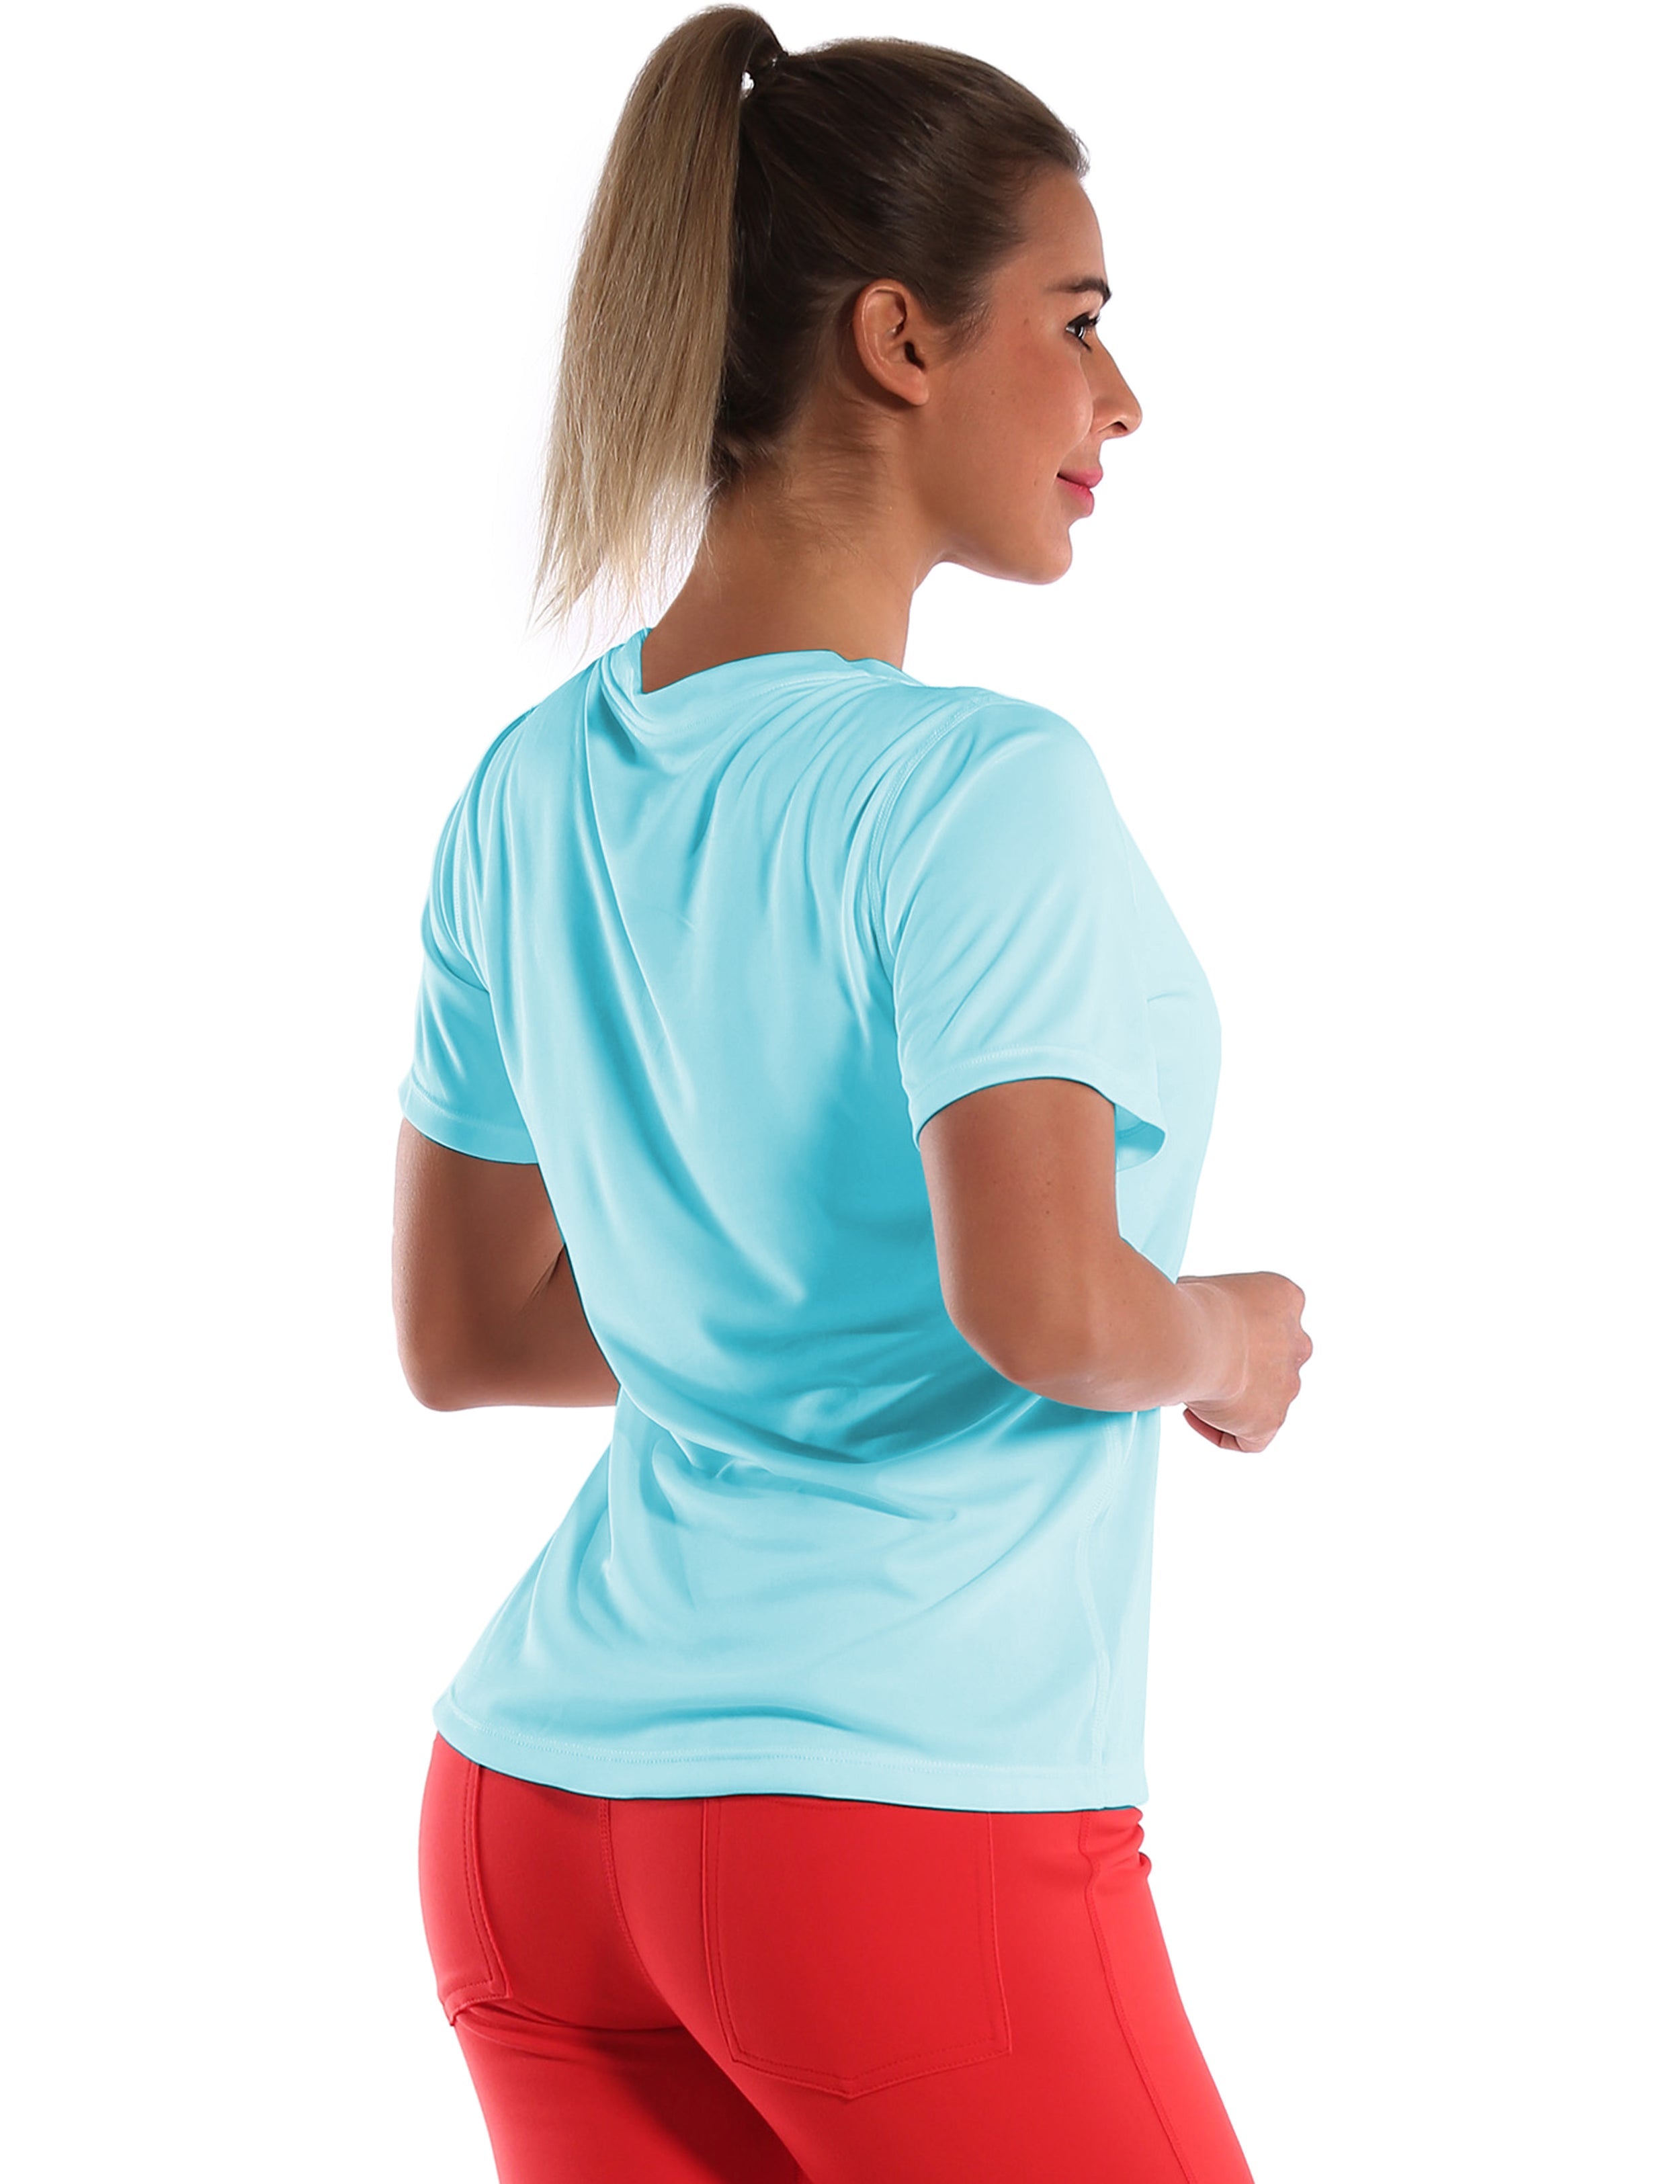 V-Neck Short Sleeve Athletic Shirts blue_Pilates